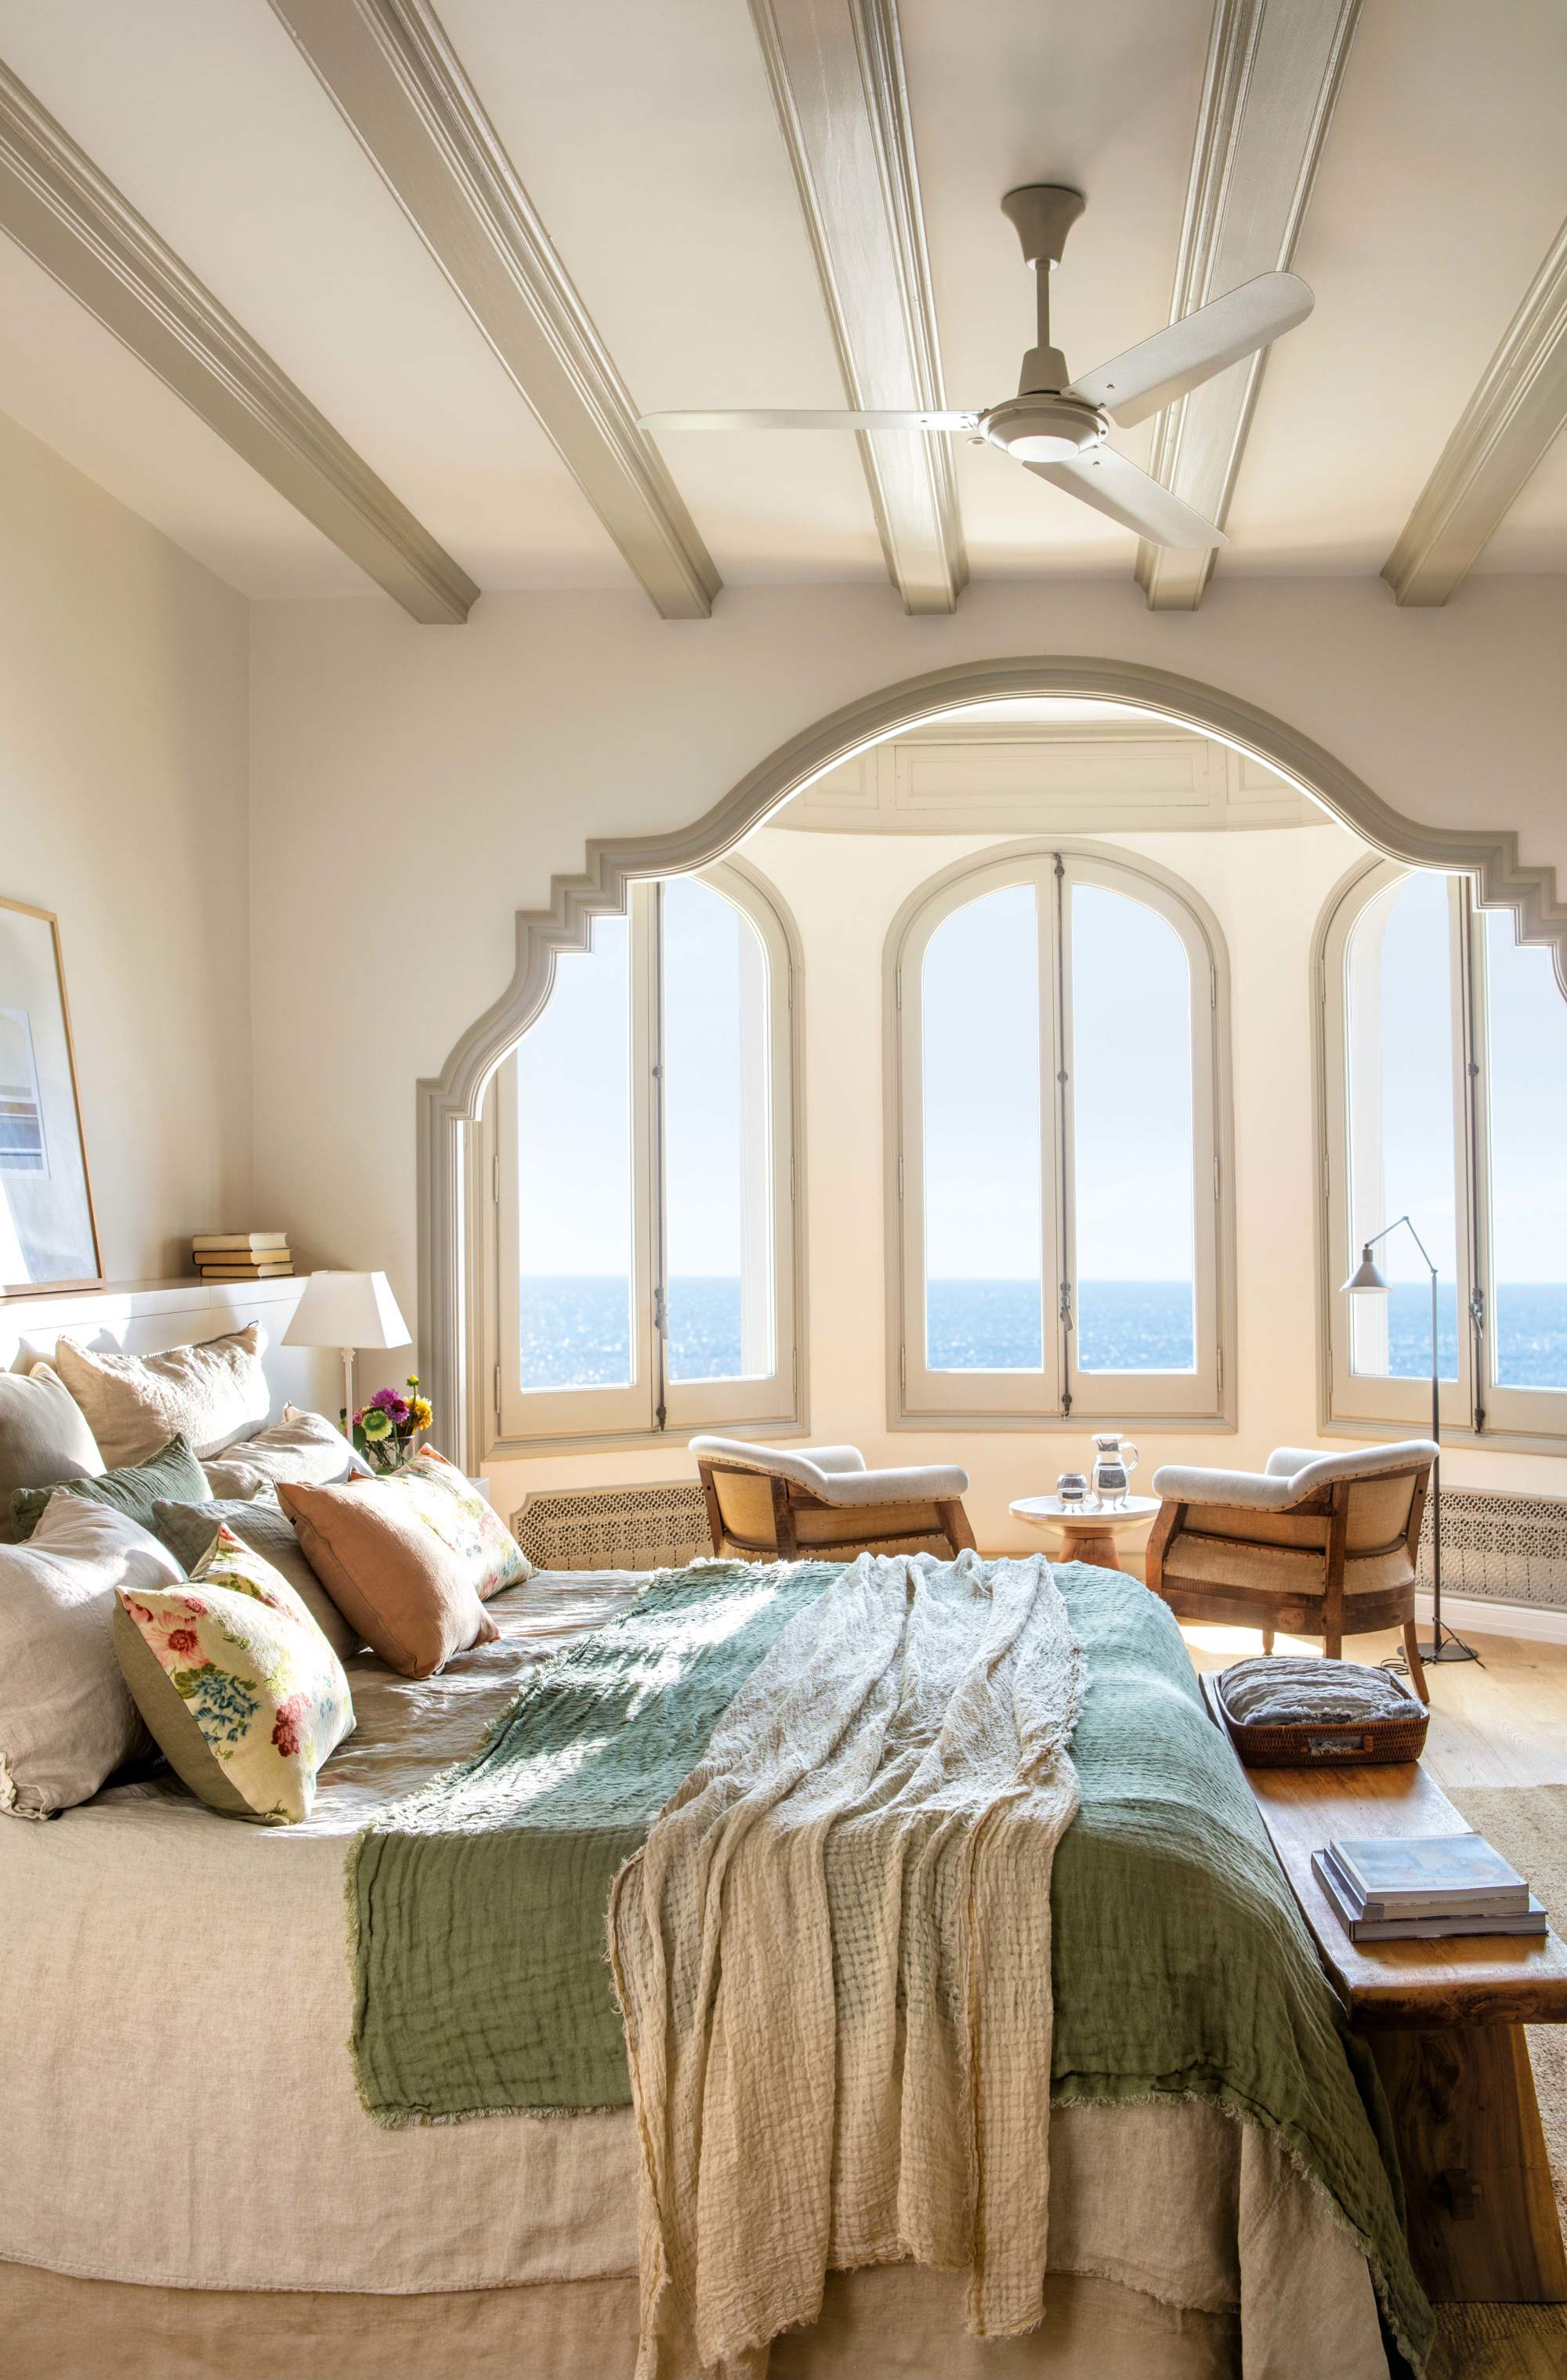 Dormitorio con mirador, vigas y arco con molduras